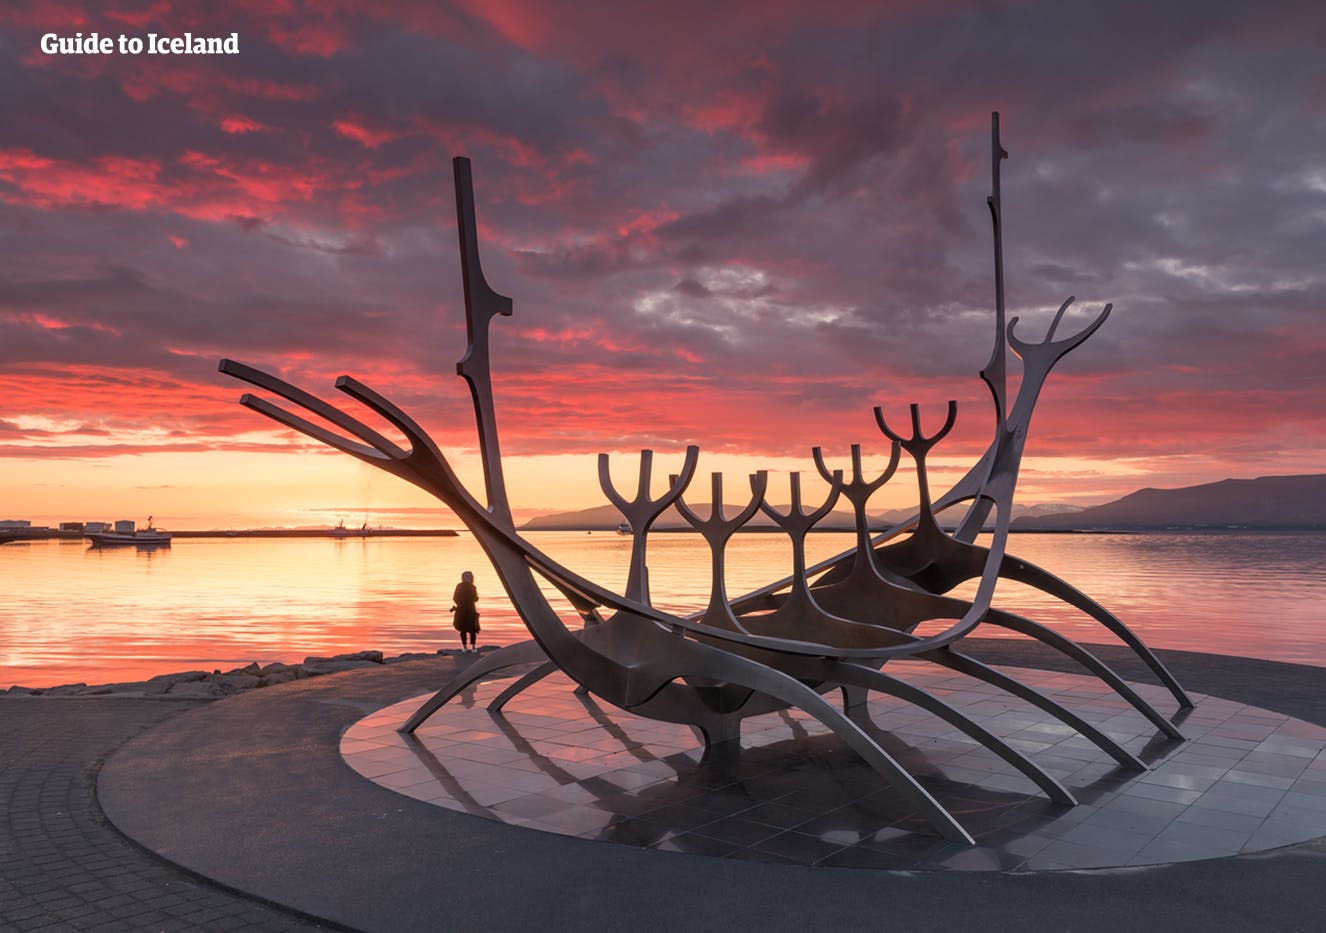 Sun Voyager-monumentet på kystlinjen ved Reykjavik i solnedgang om sommeren.